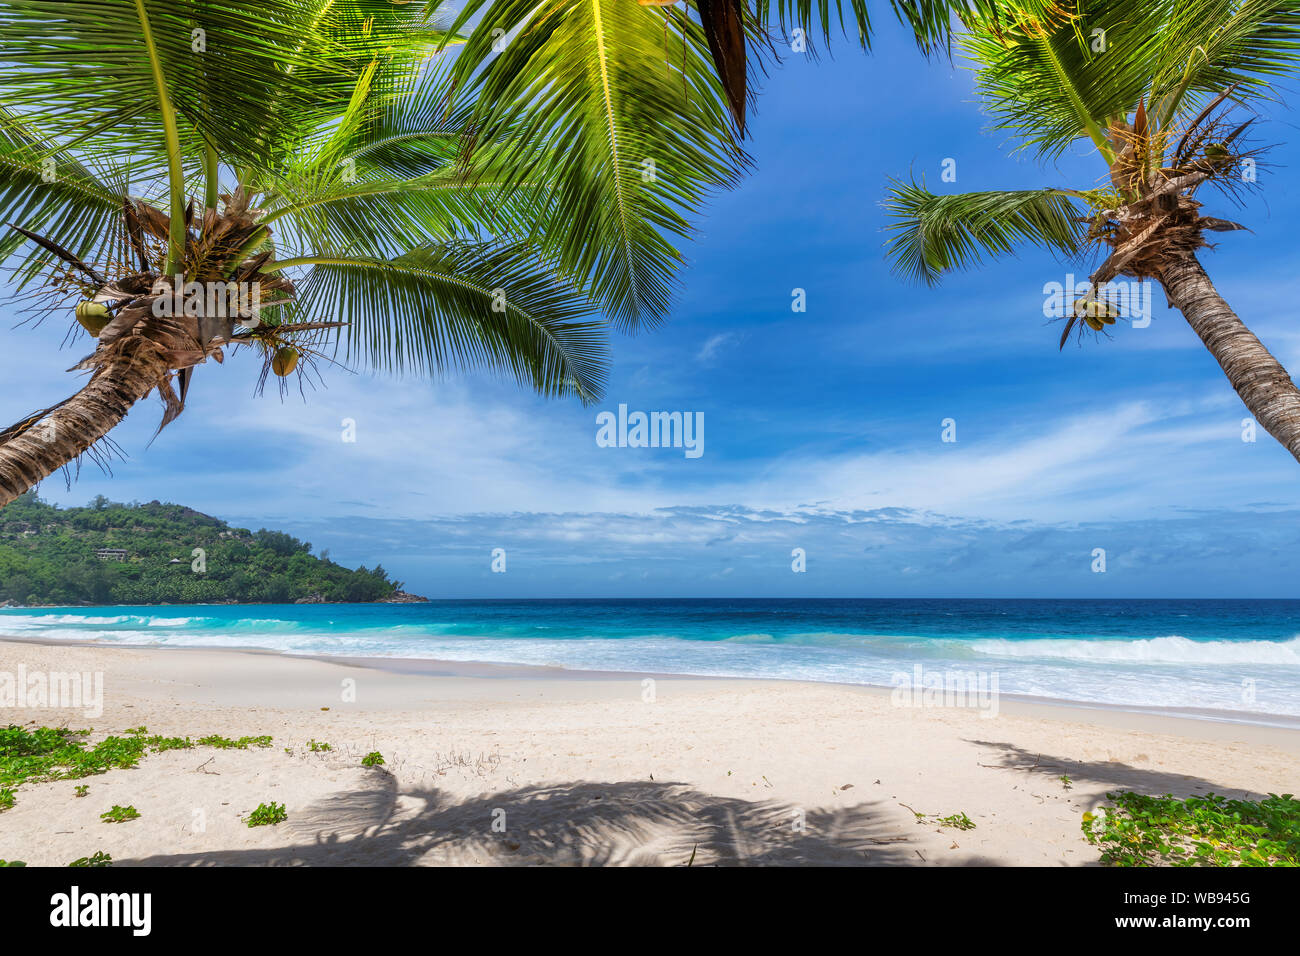 Paradise sandy beach avec des cocotiers et des vagues de l'océan turquoise Banque D'Images